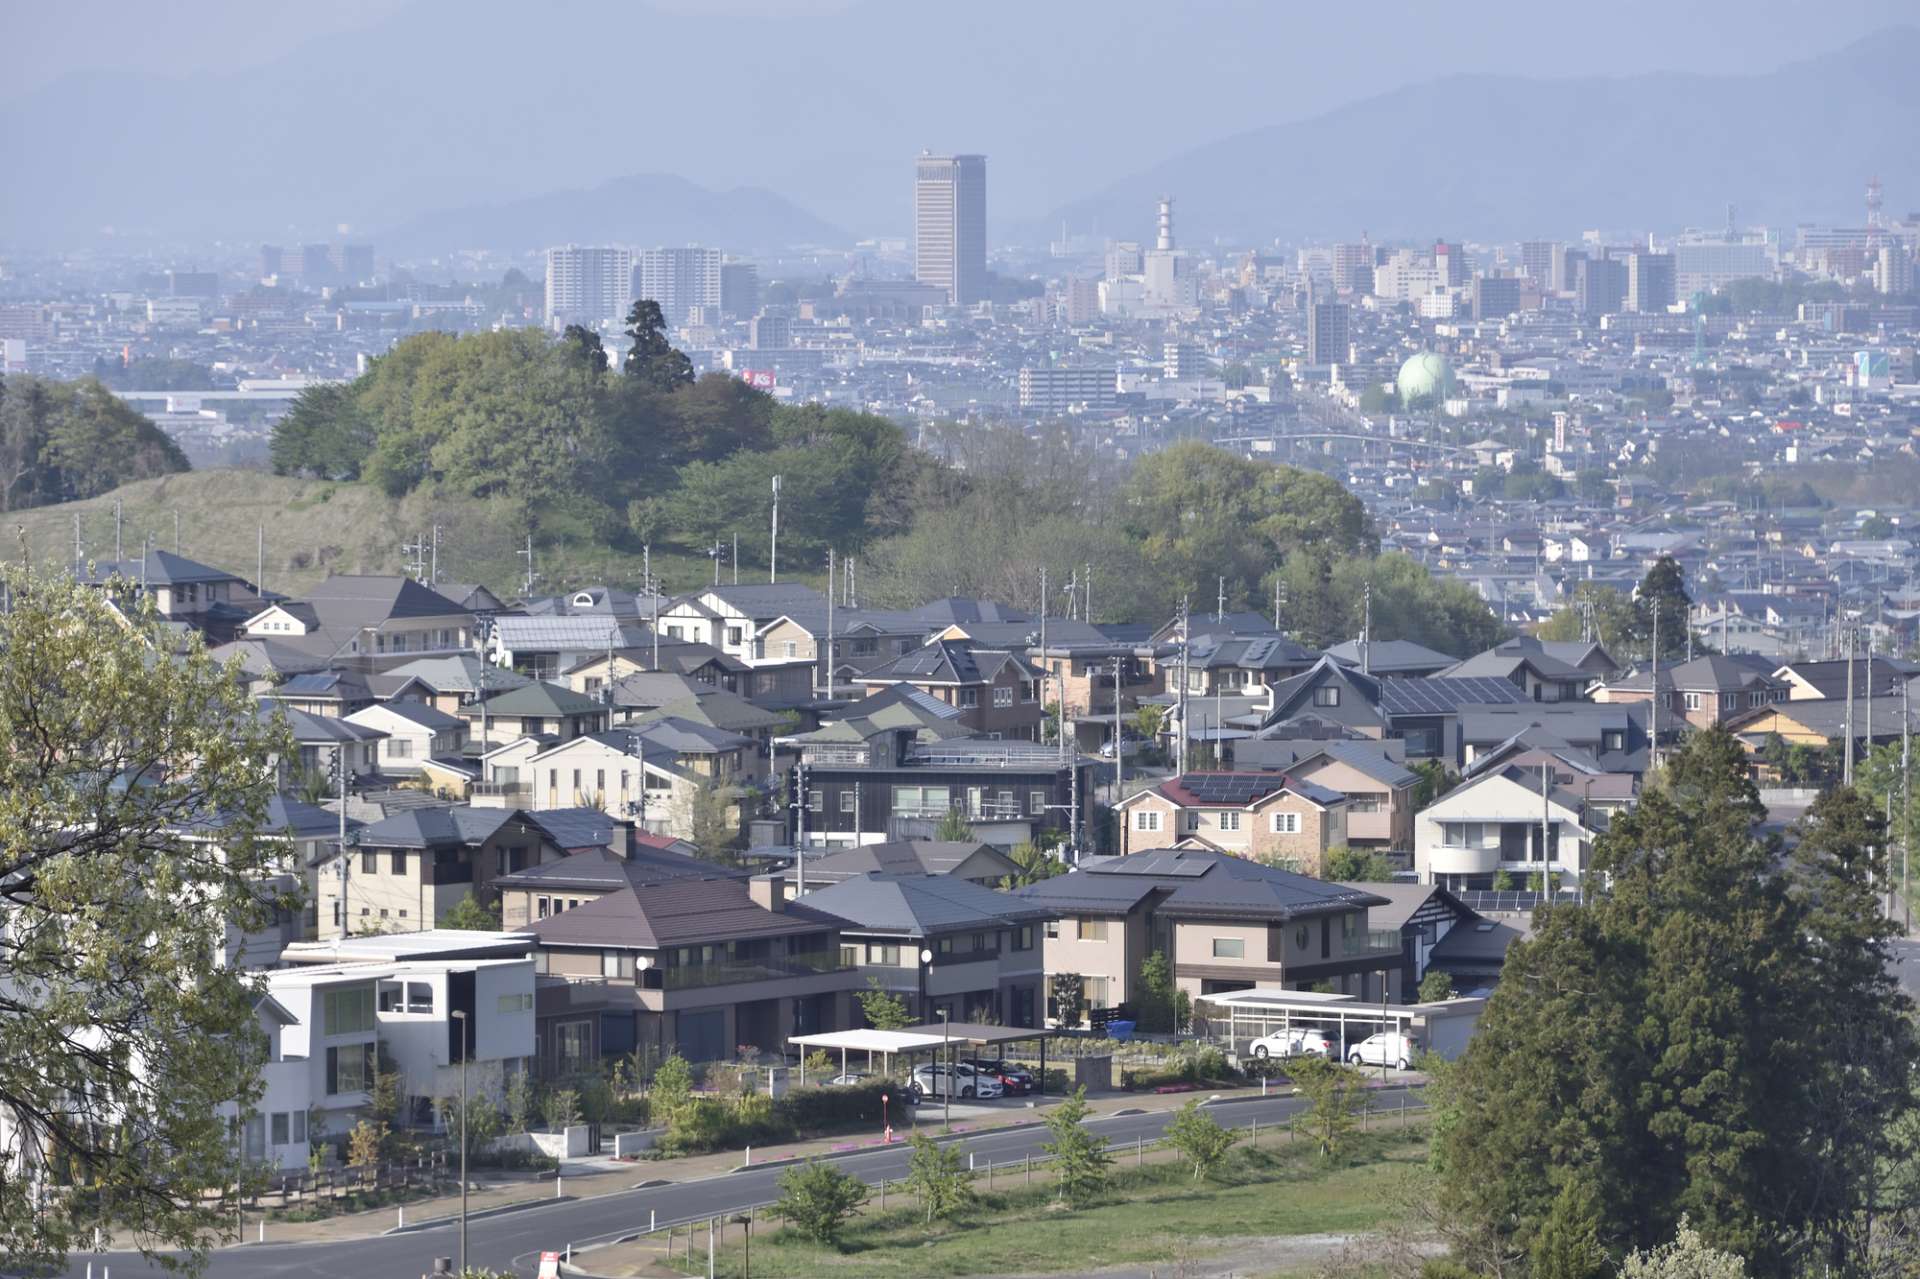 奈良県五條市や和歌山県橋本市など奈良近隣で空き家売却・対策など有効な活用方法を提案する我々の想い